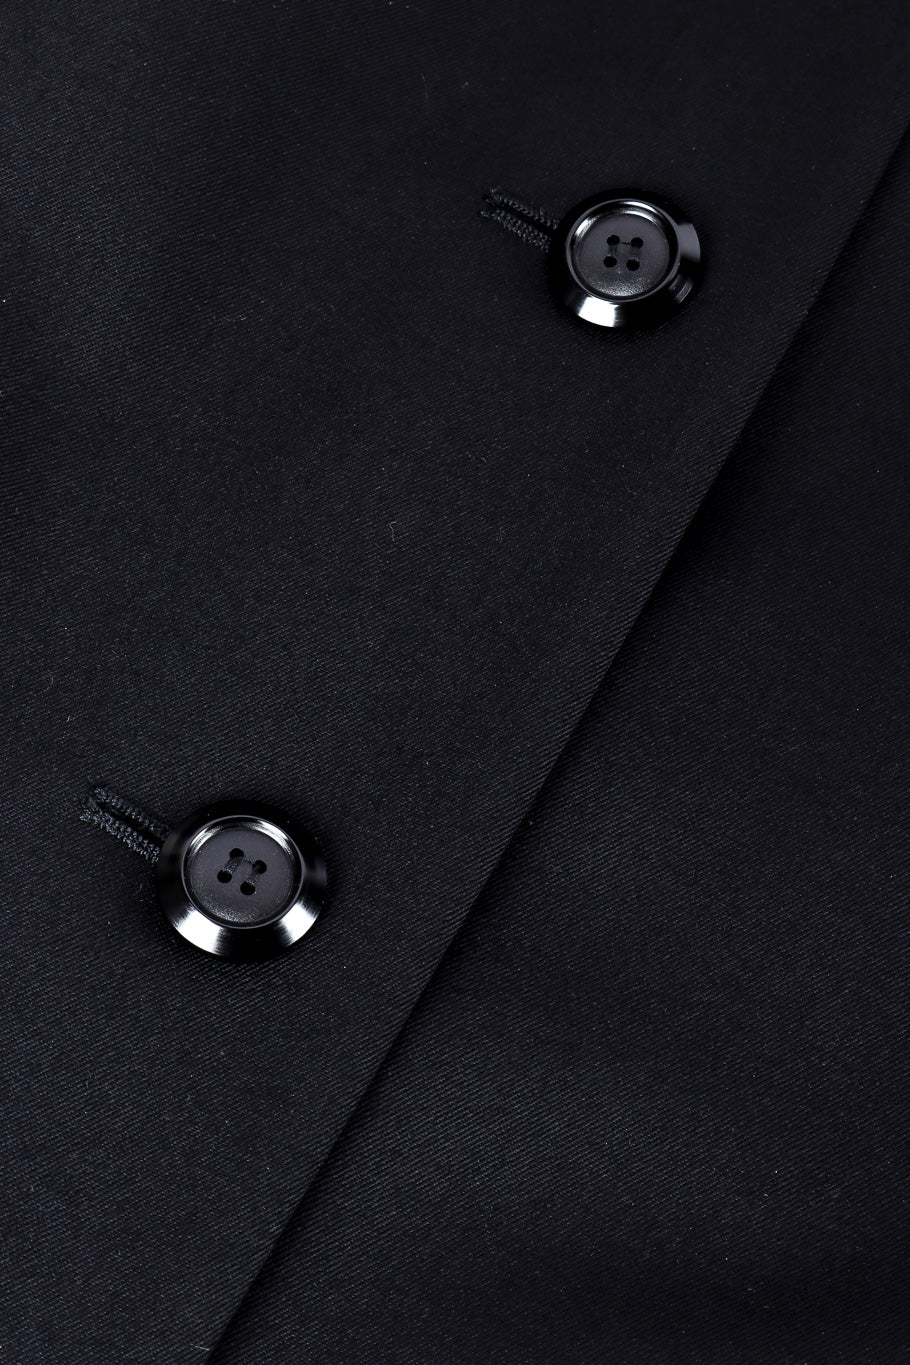 Vintage Yves Saint Laurent Collared Blazer Dress front button closure closeup @Recessla